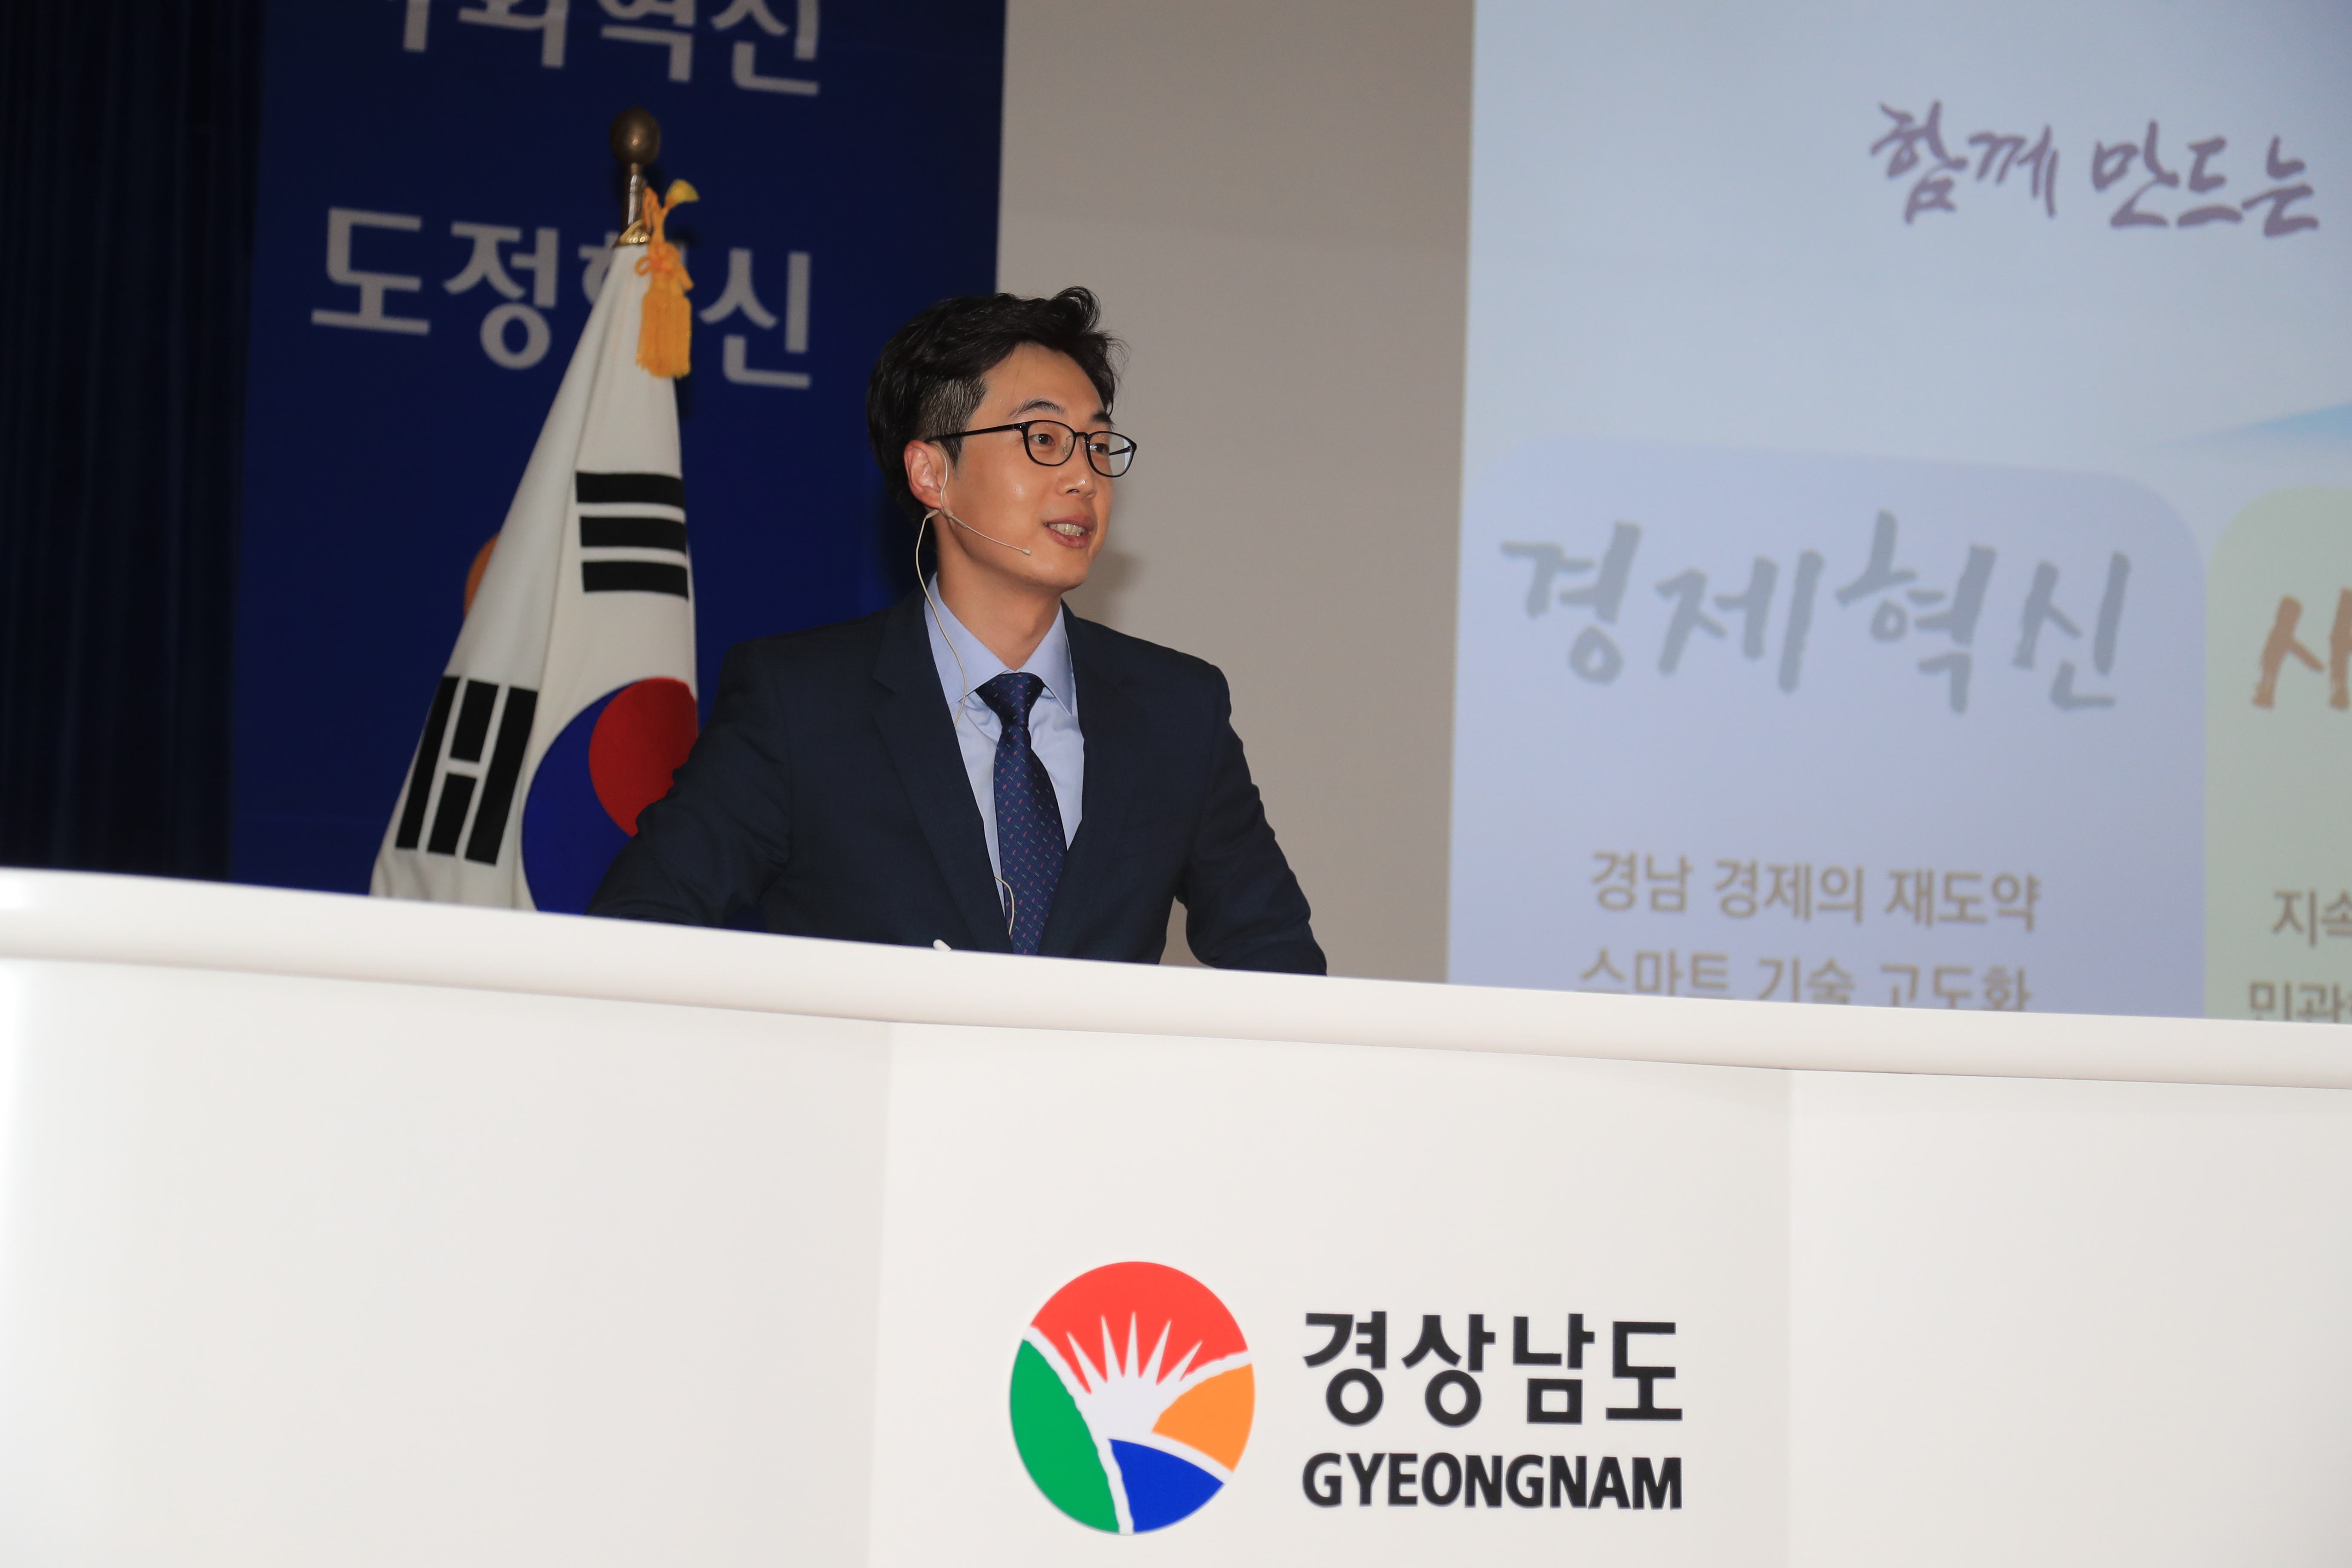 [경상남도] 지방자치단체 최초 ‘혁신현장 이어달리기’ 개최 관련사진 2